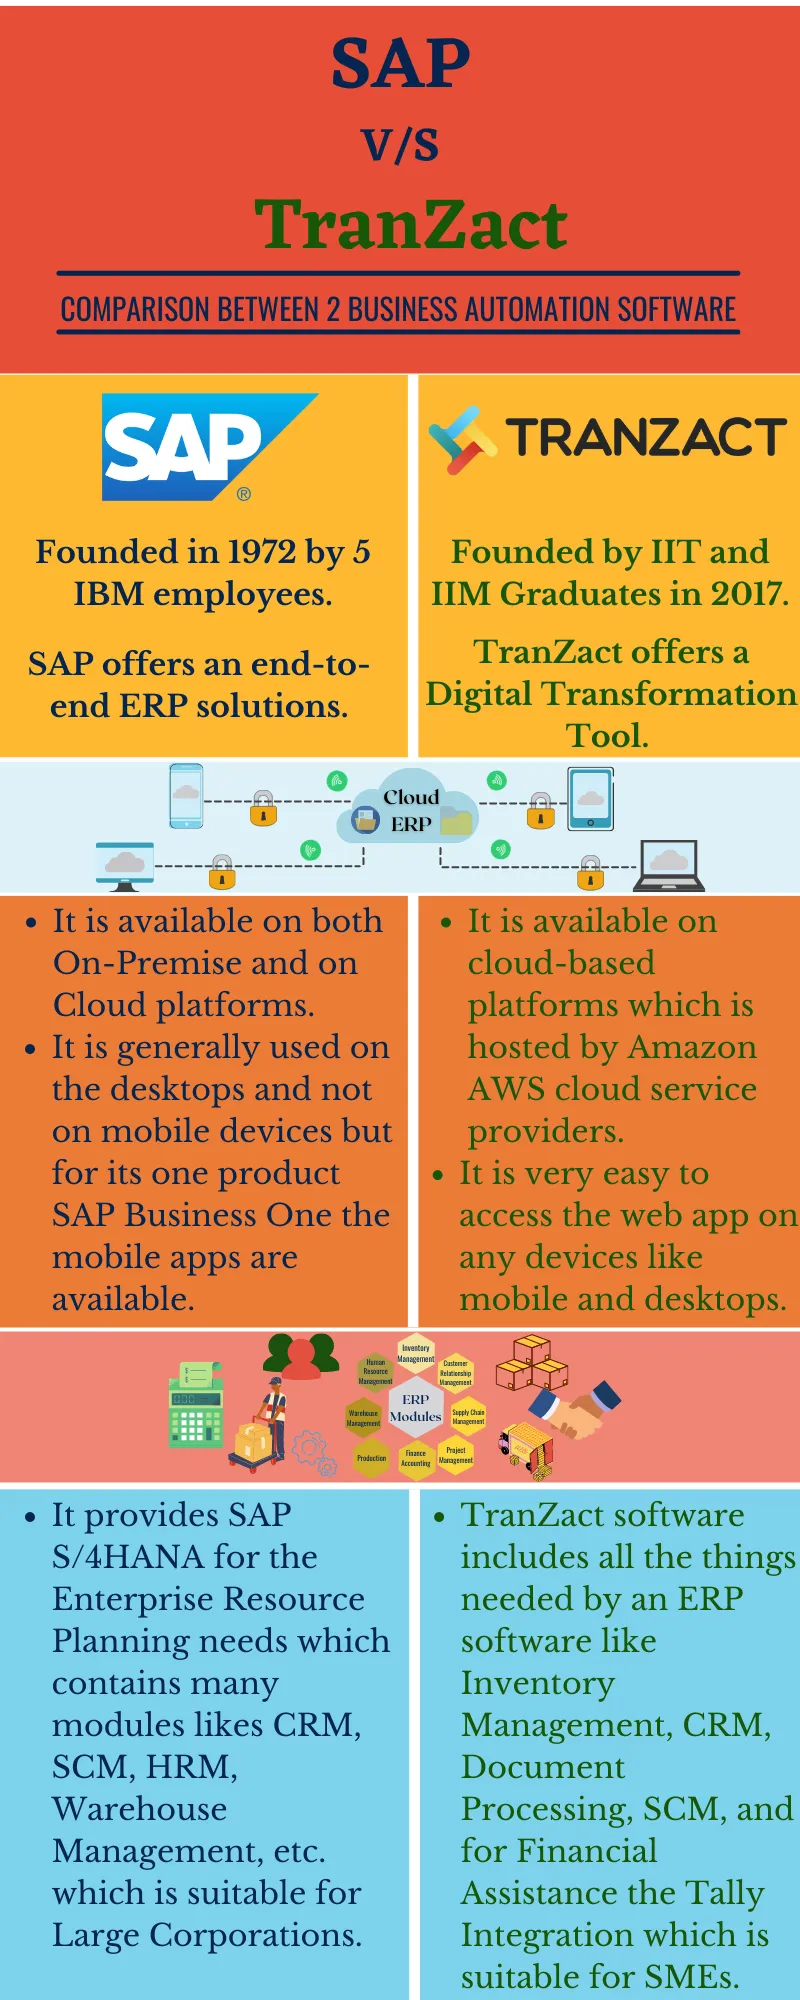 SAP V/s TranZact: Complete comparison